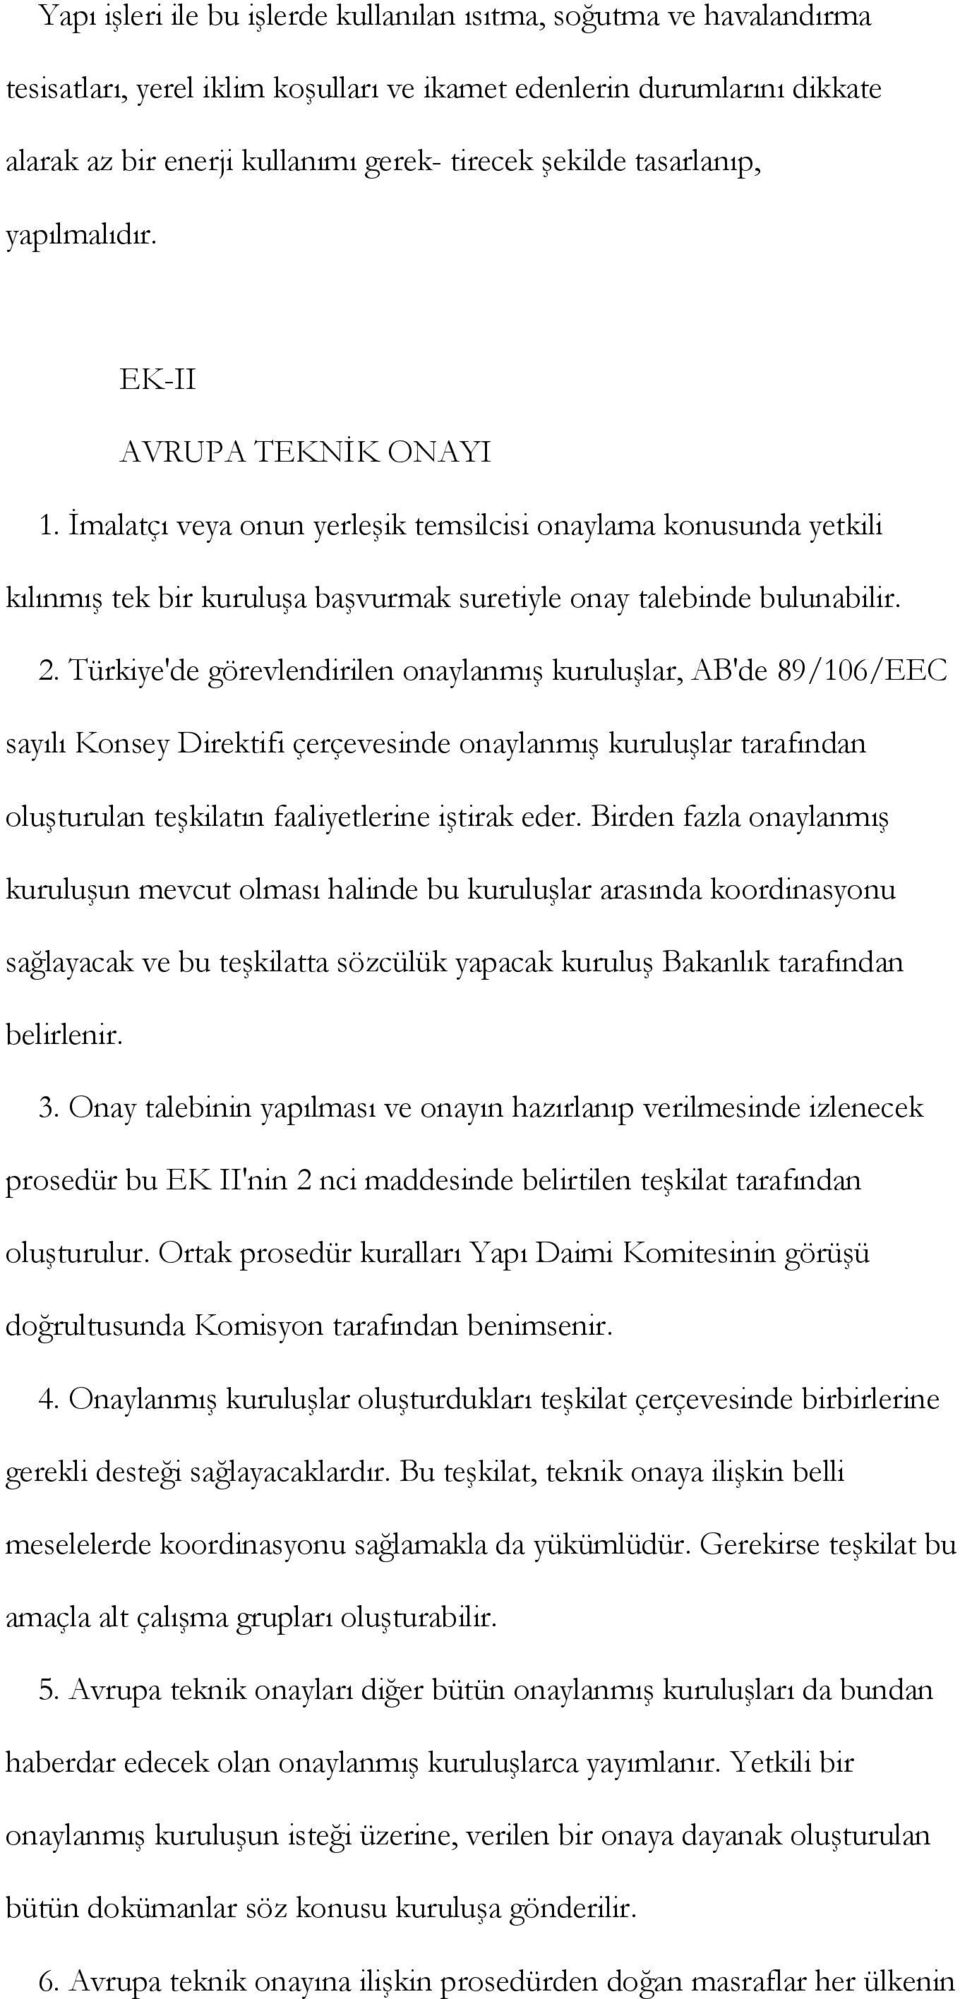 Türkiye'de görevlendirilen onaylanmış kuruluşlar, AB'de 89/106/EEC sayılı Konsey Direktifi çerçevesinde onaylanmış kuruluşlar tarafından oluşturulan teşkilatın faaliyetlerine iştirak eder.